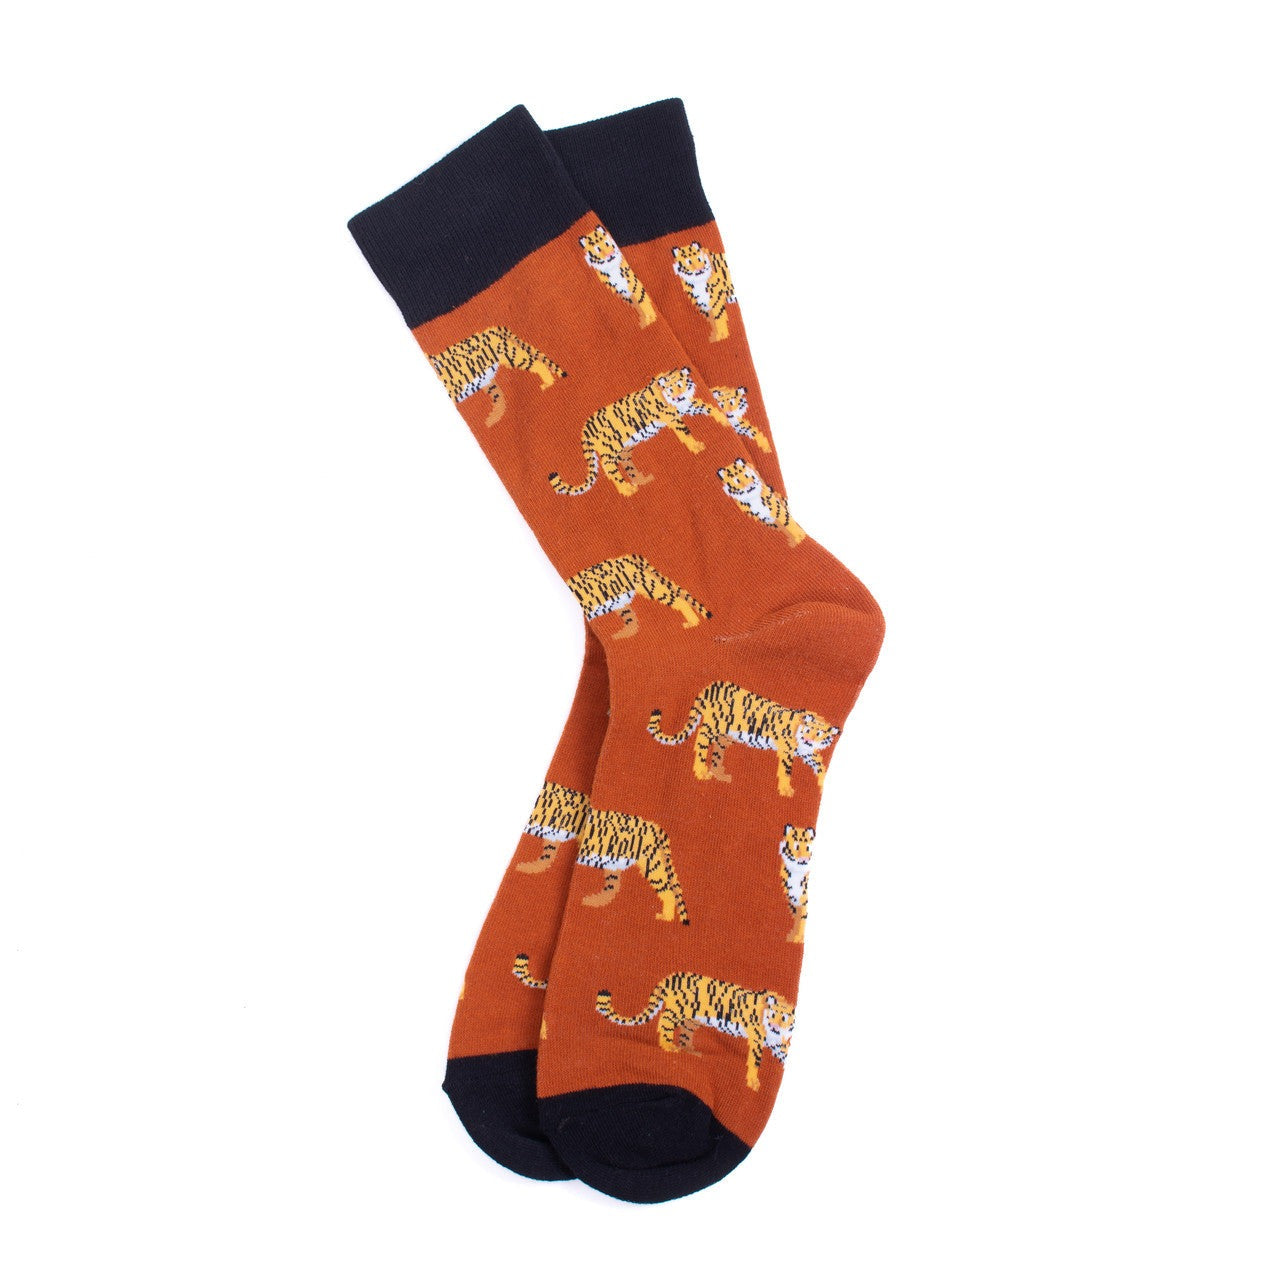 Men's Tiger Socks